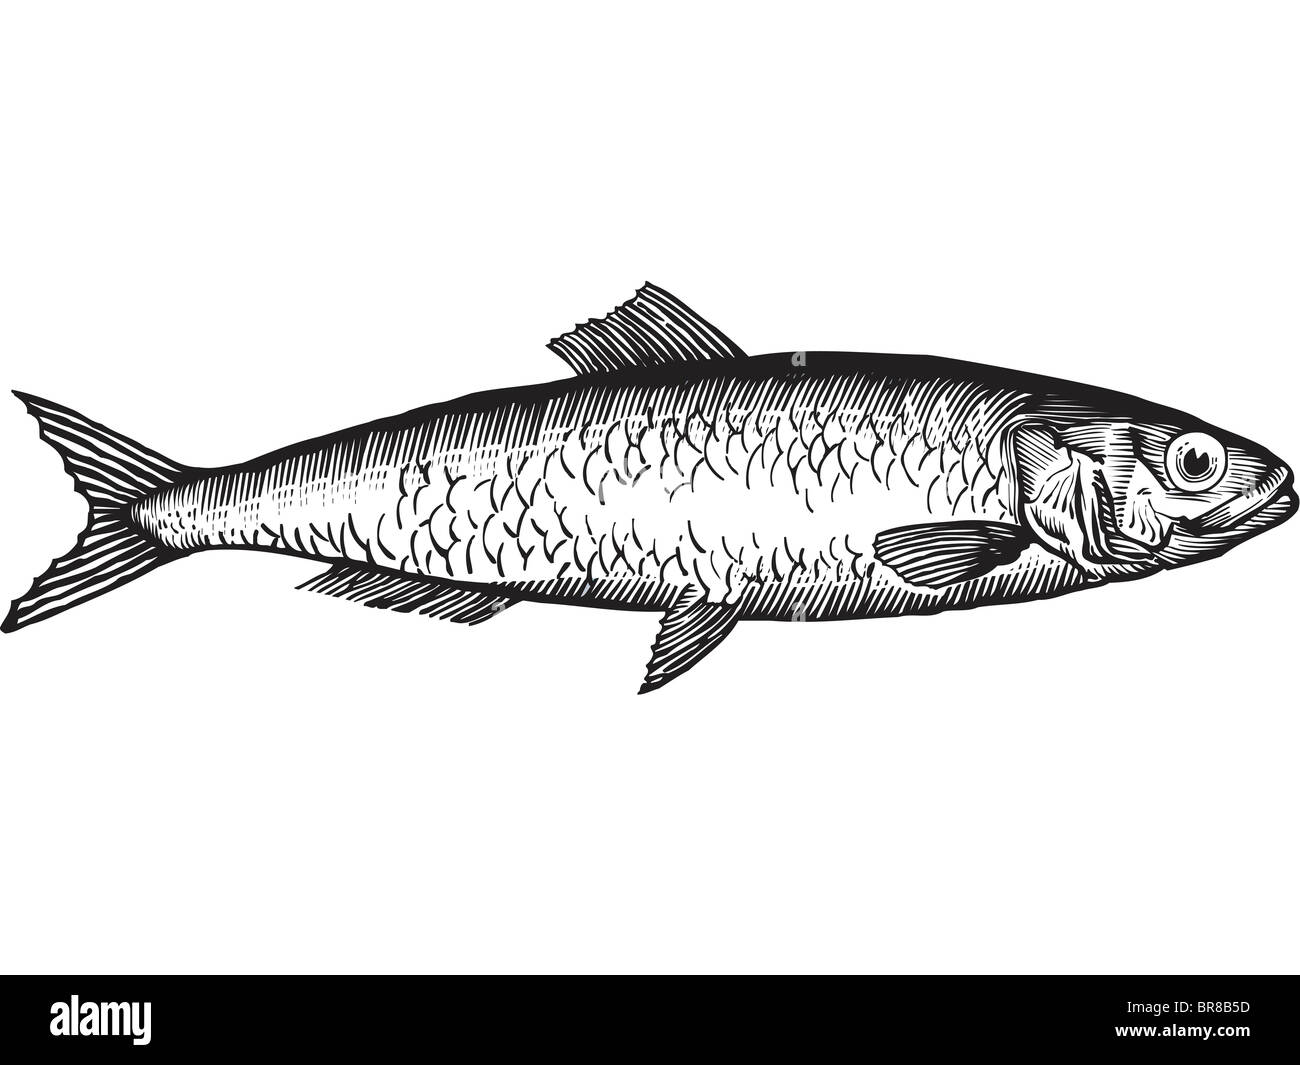 Un dessin en noir et blanc d'un permis de pêche du hareng Banque D'Images